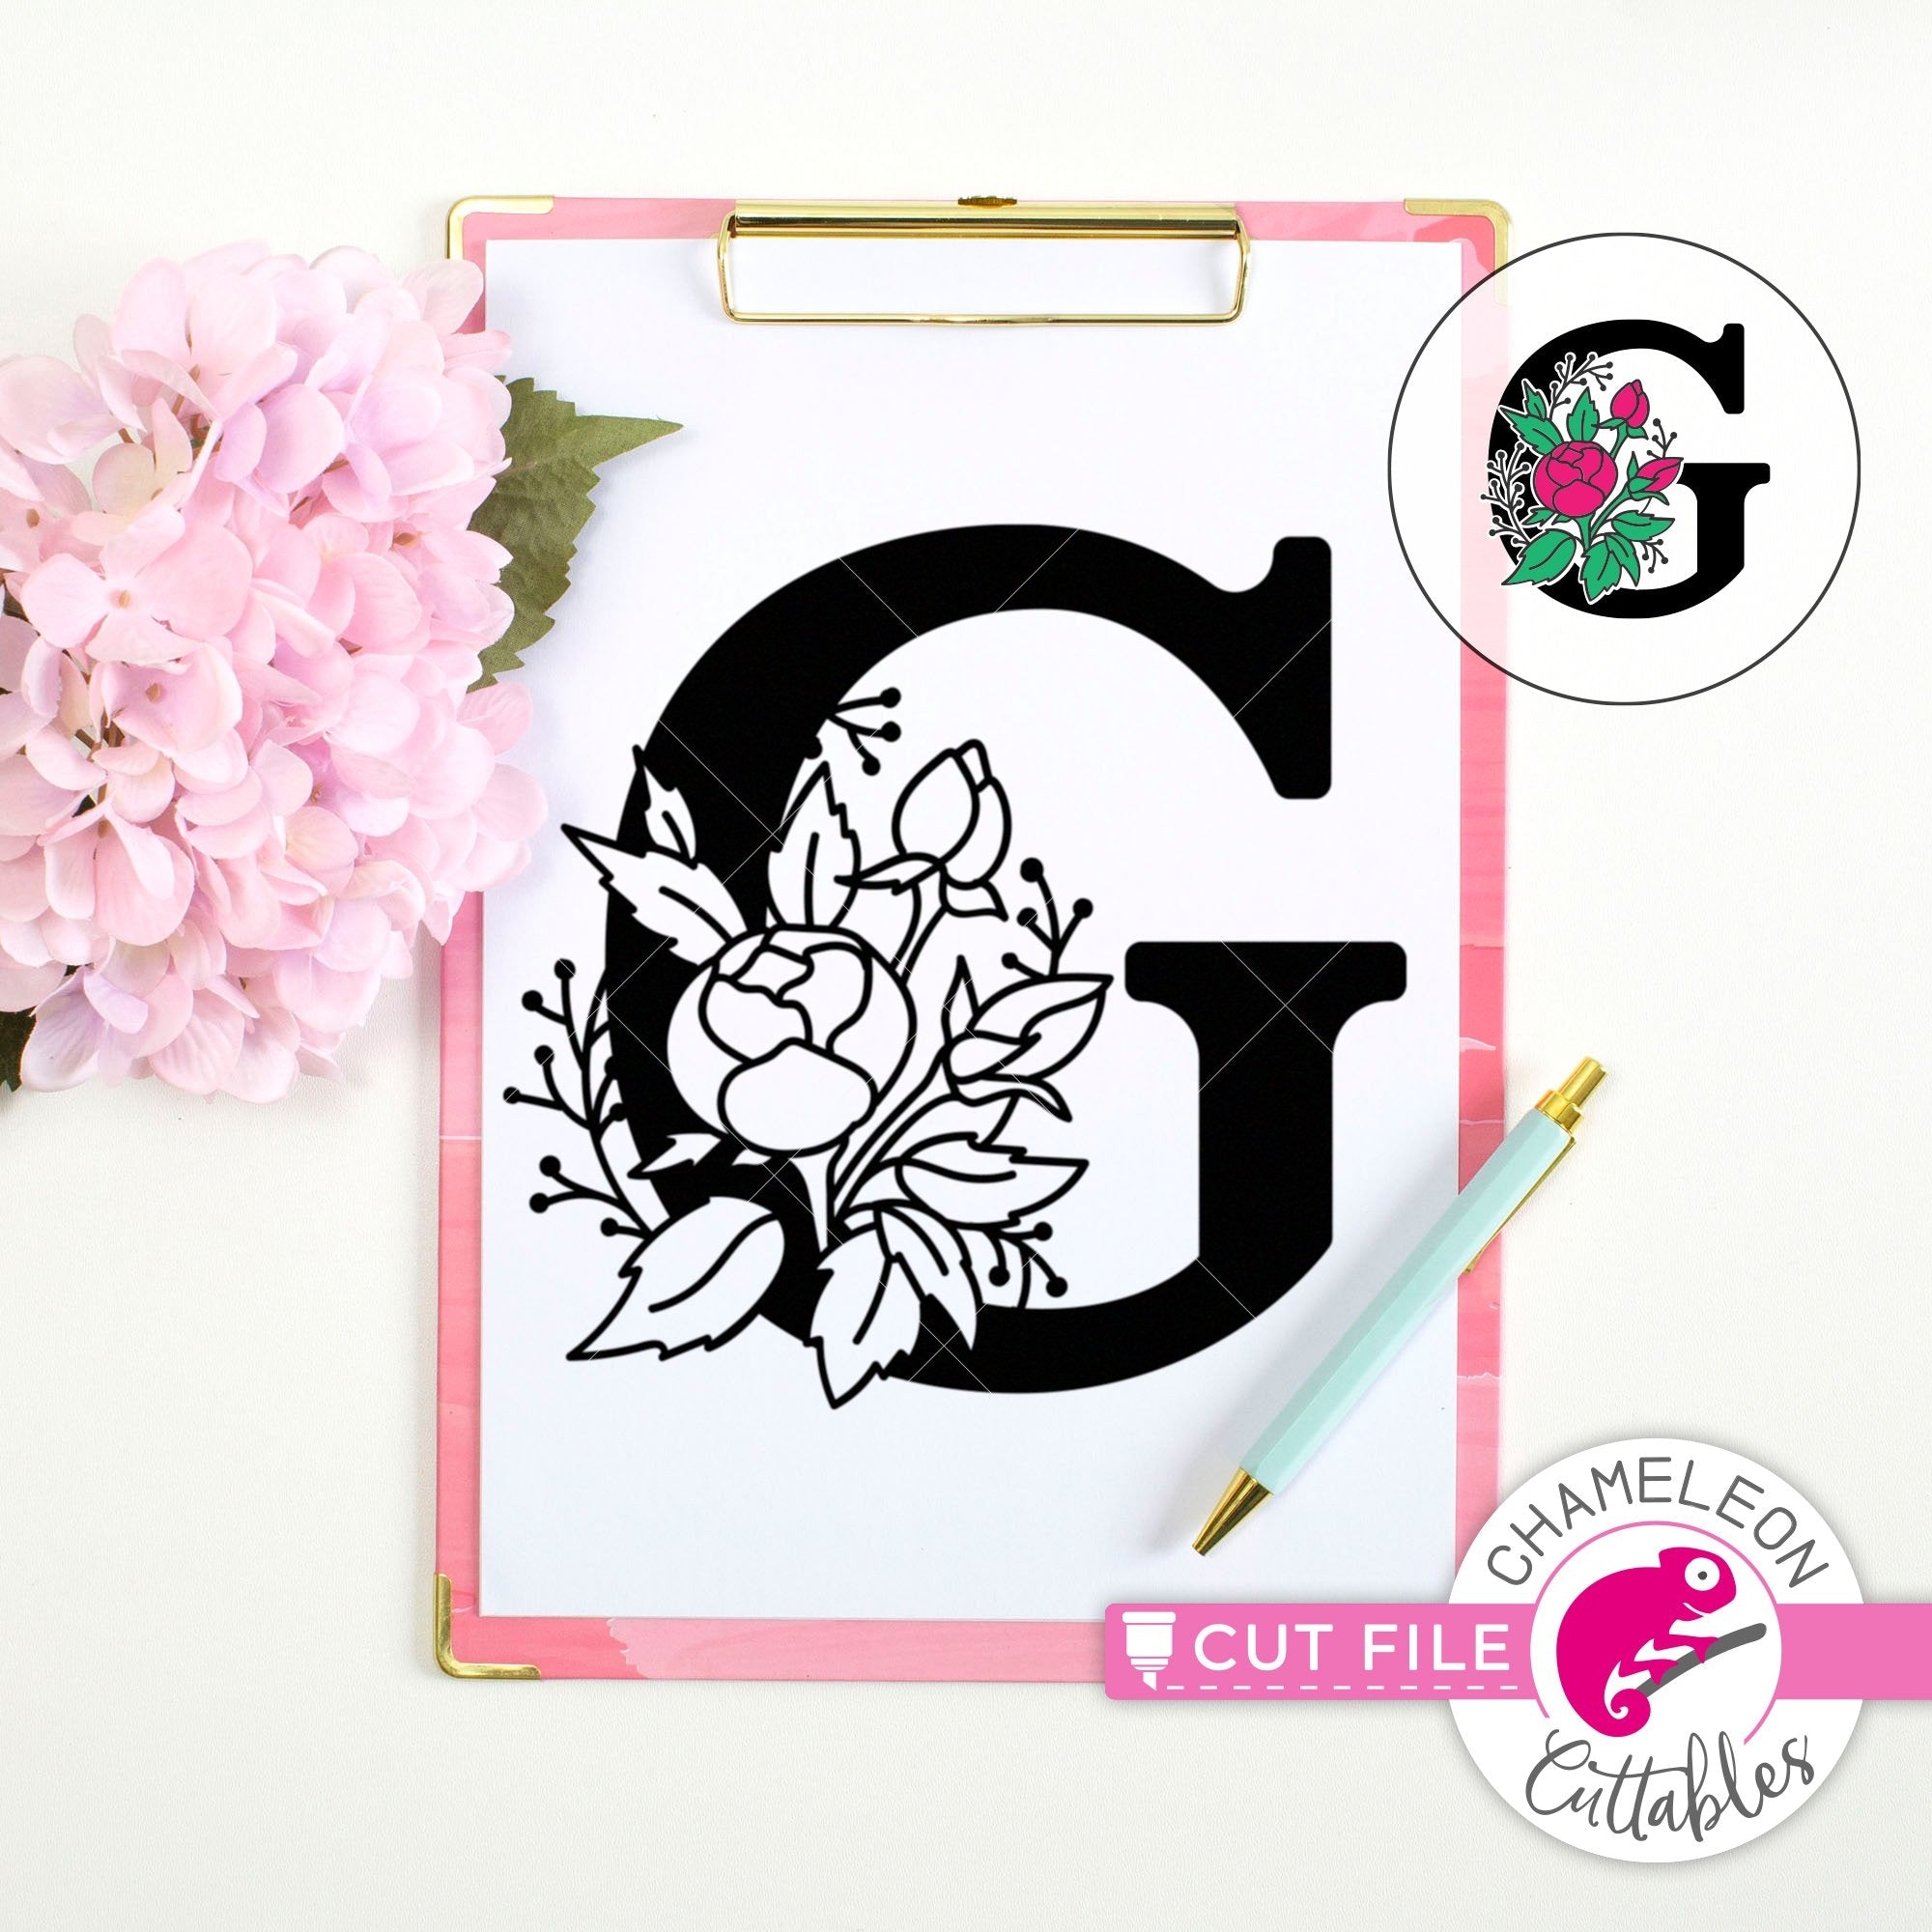 Download G Floral Monogram Letter With Flowers Svg Png Dxf Eps Jpeg Chameleon Cuttables Llc Chameleon Cuttables Llc